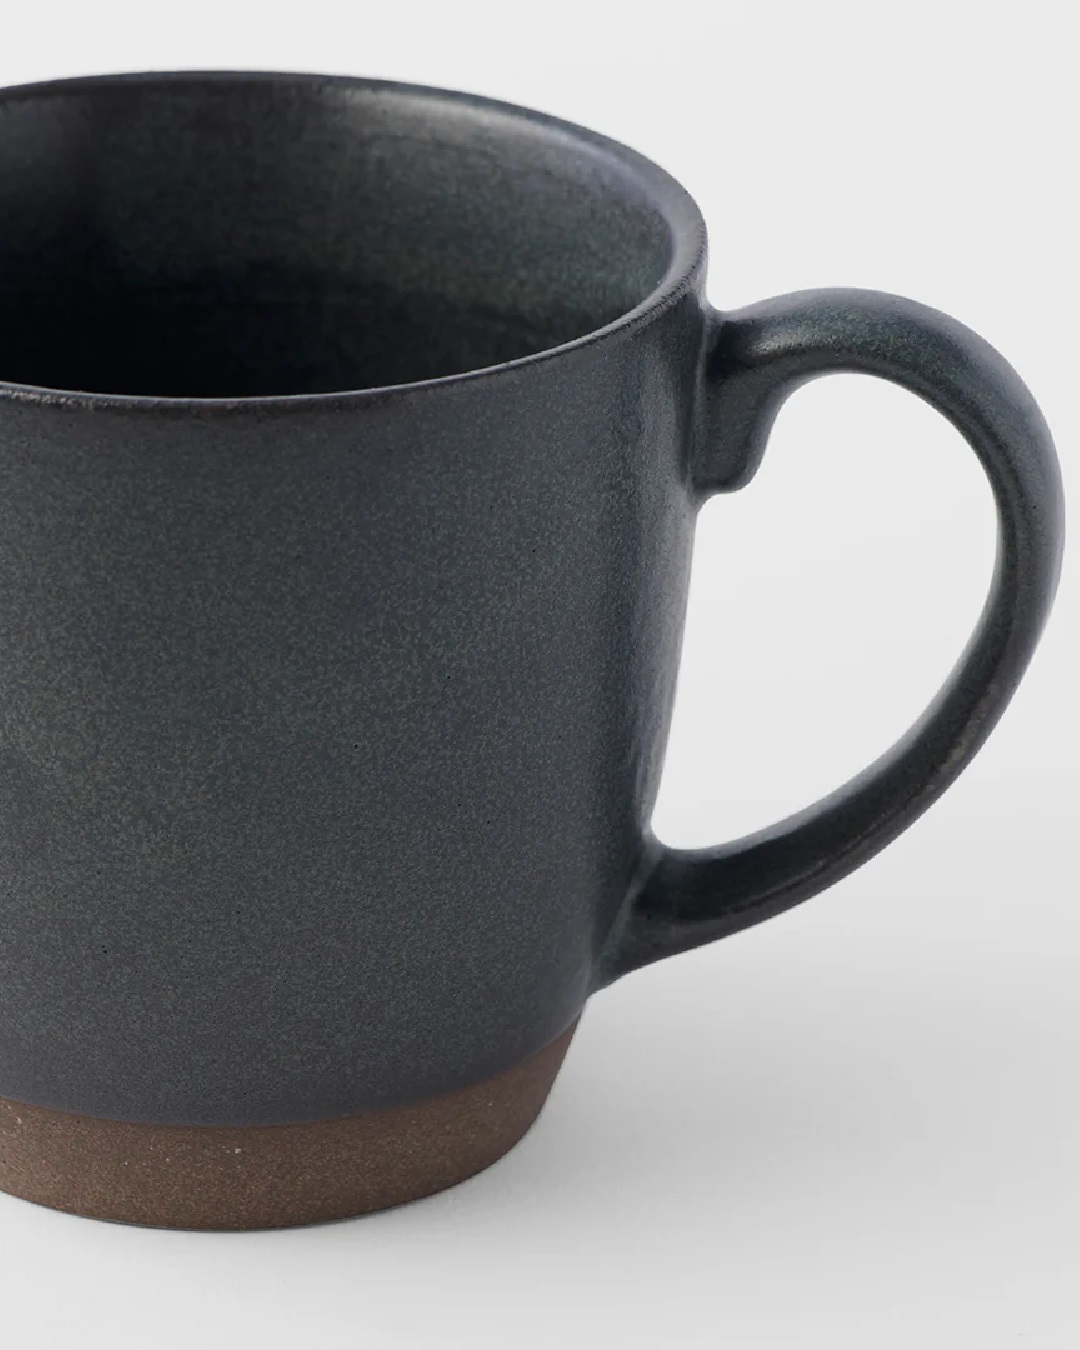 Black coffee mug